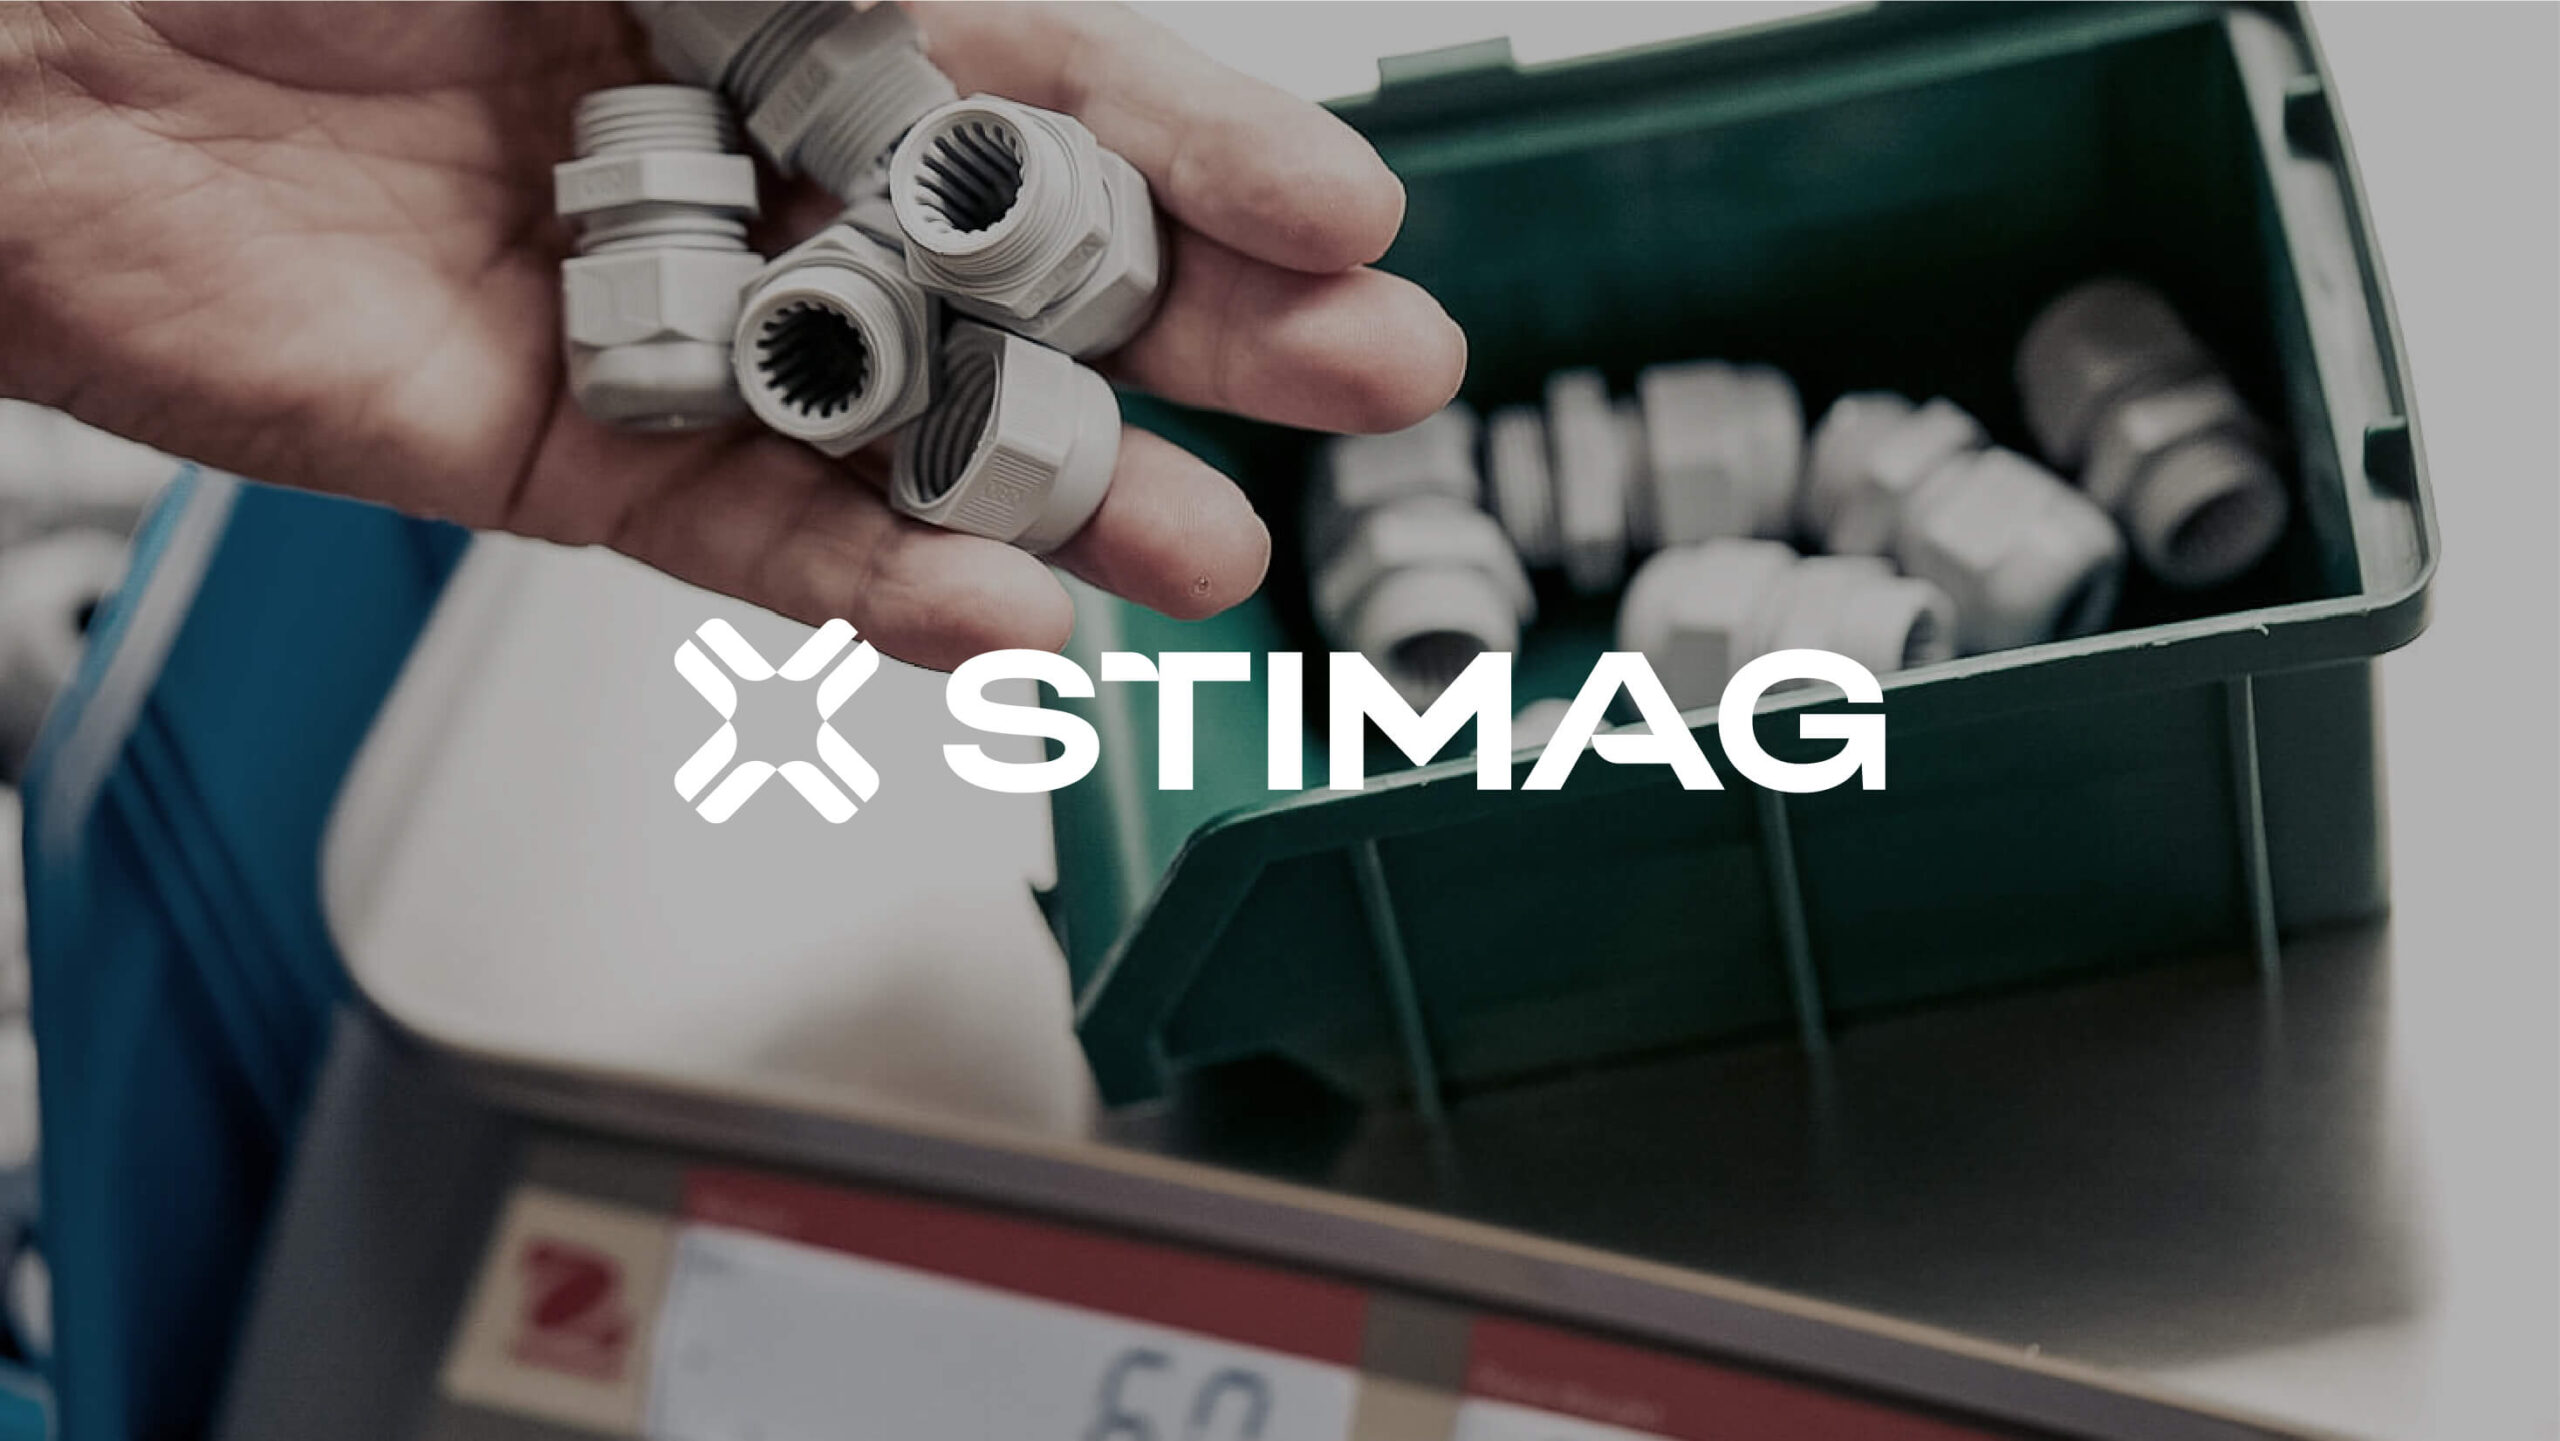 Stimag-website-case-01-01